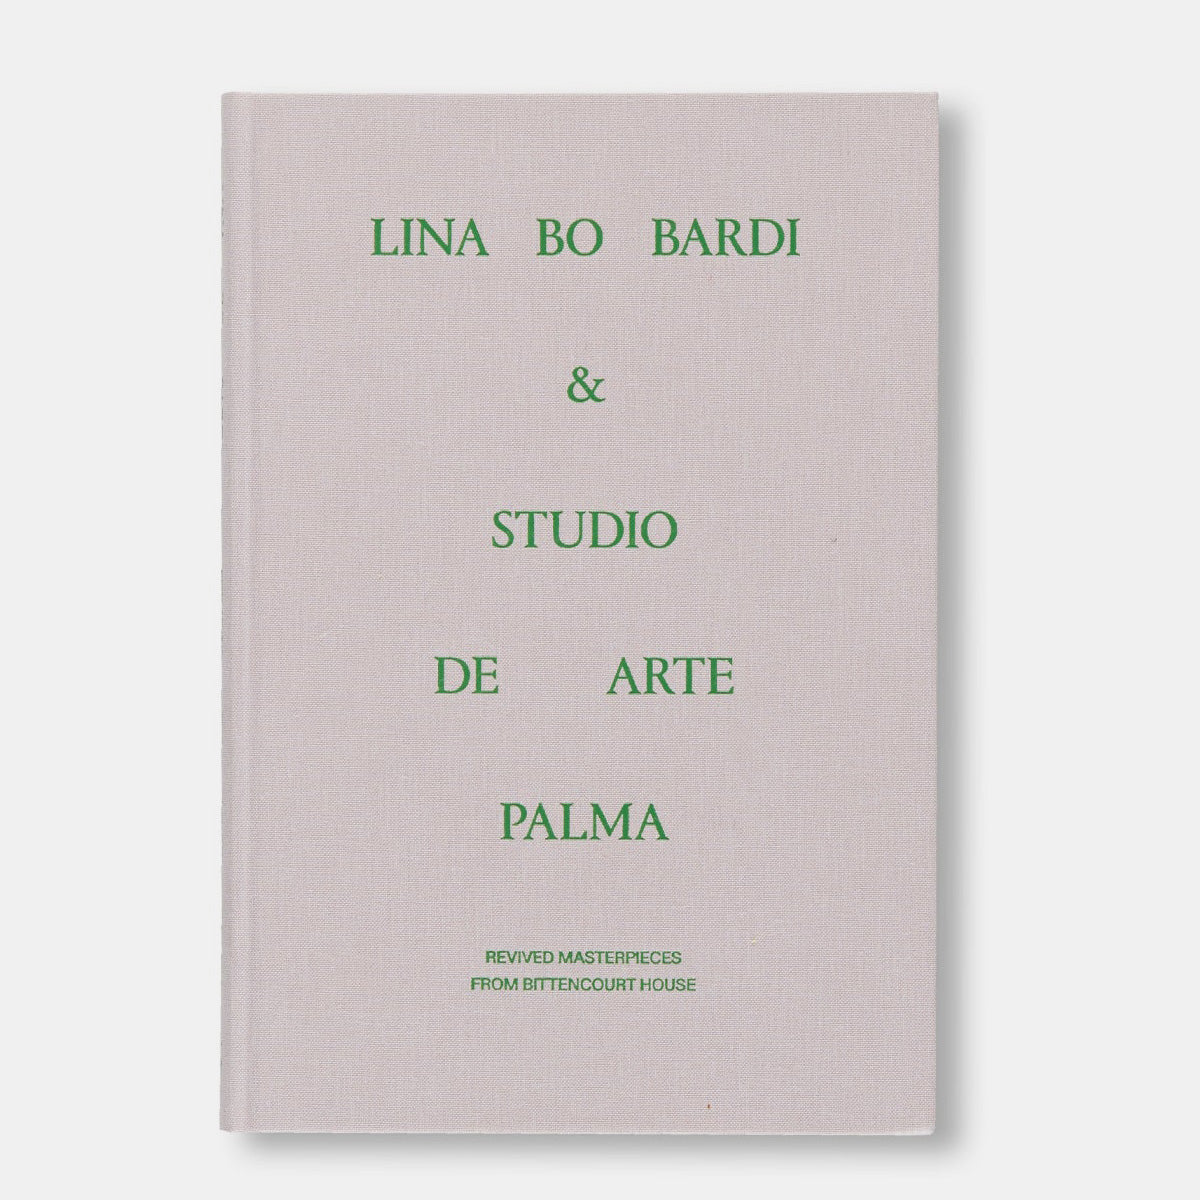 Lina Bo Bardi & Studio De Arte Palma